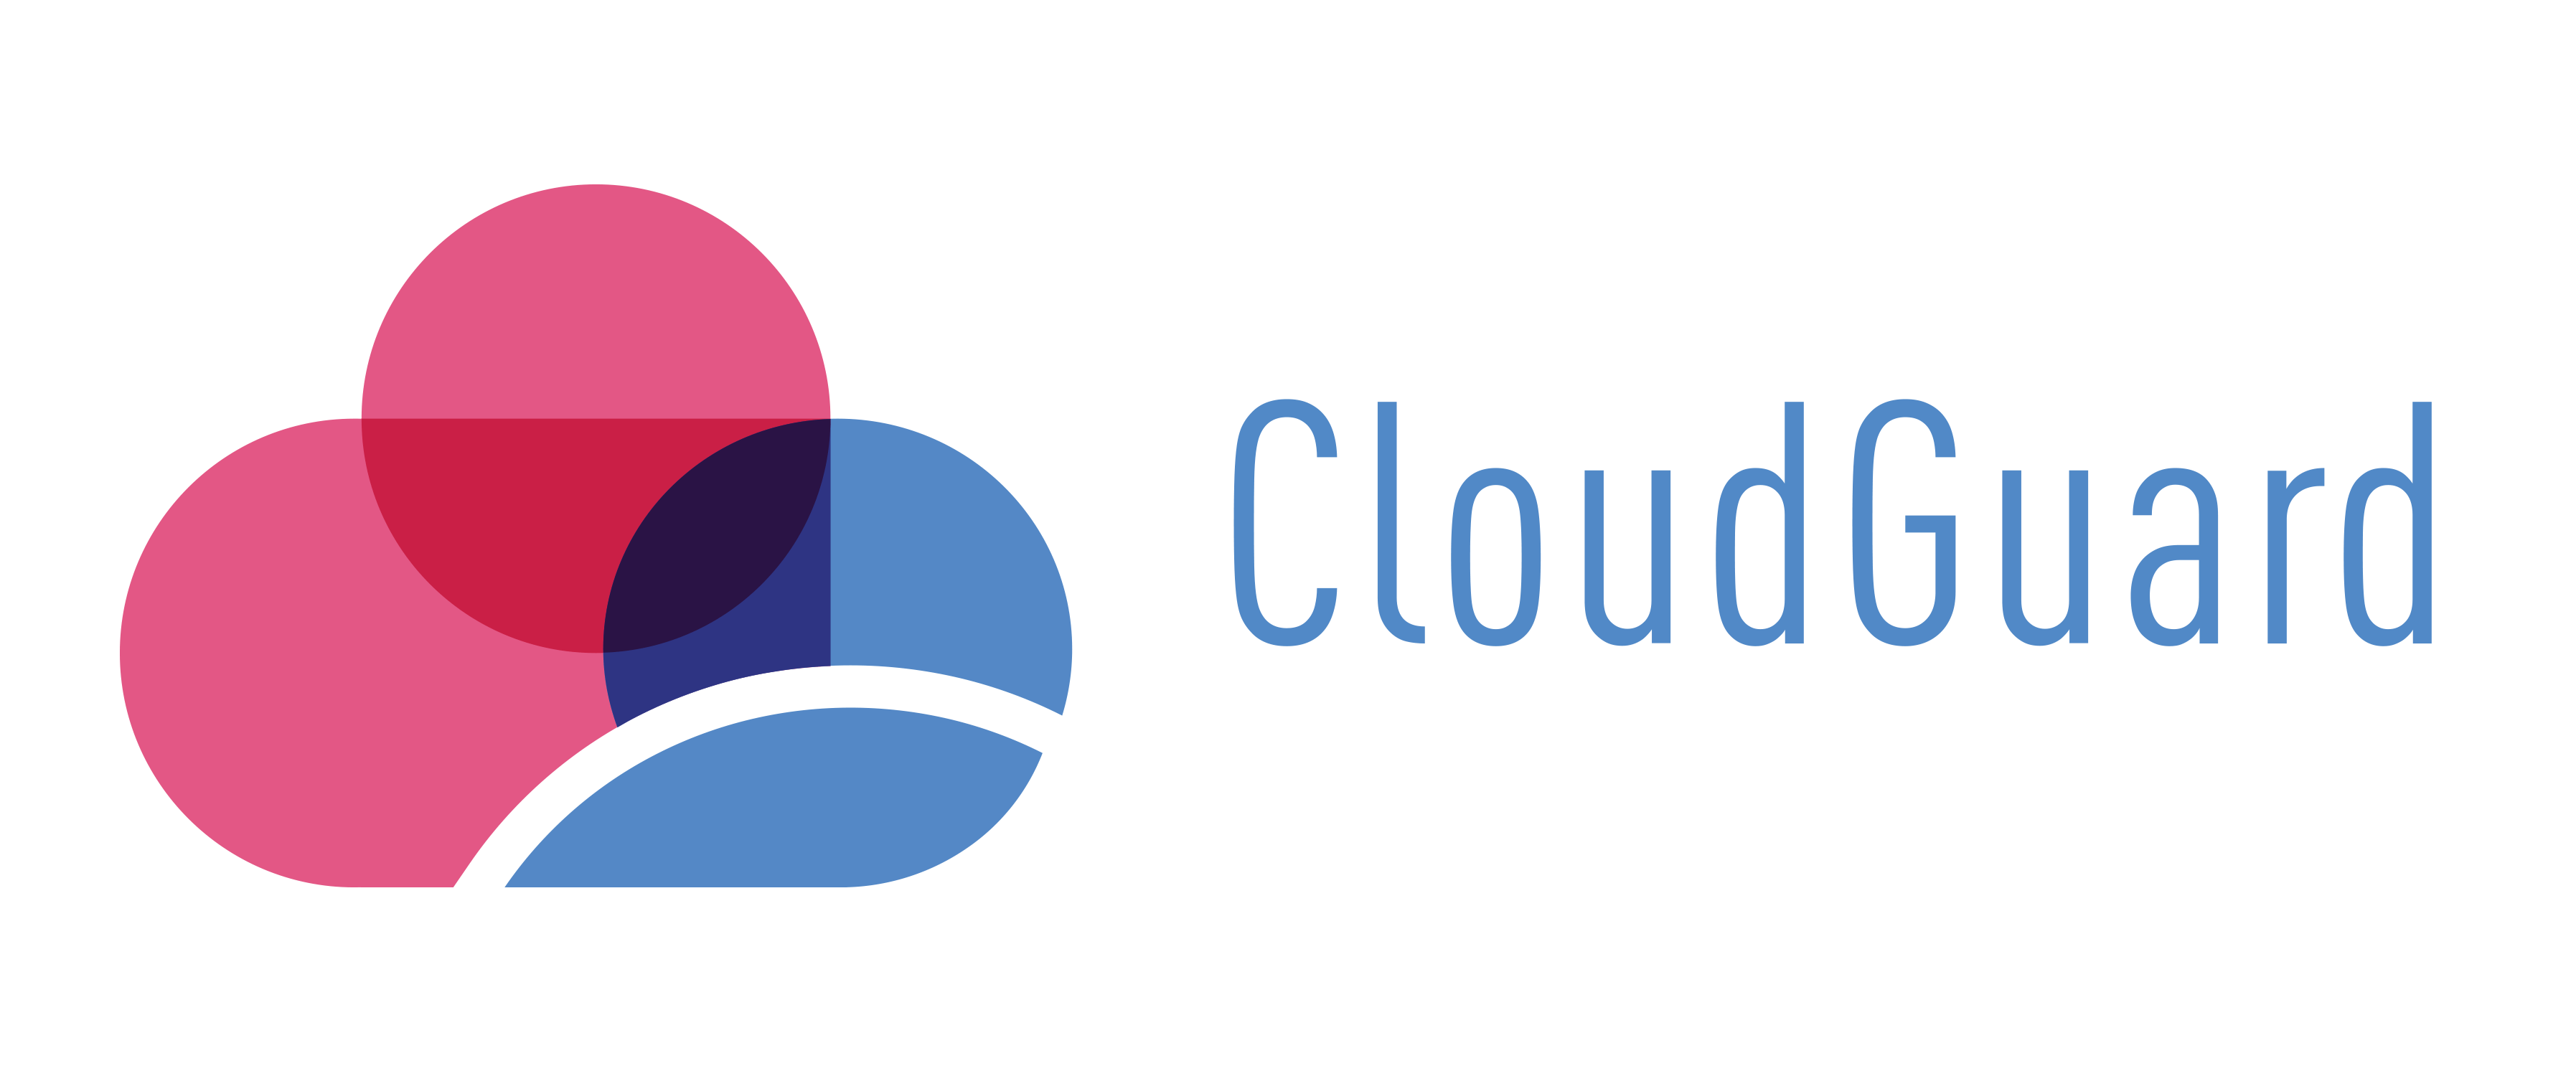 CloudGuard – Logo